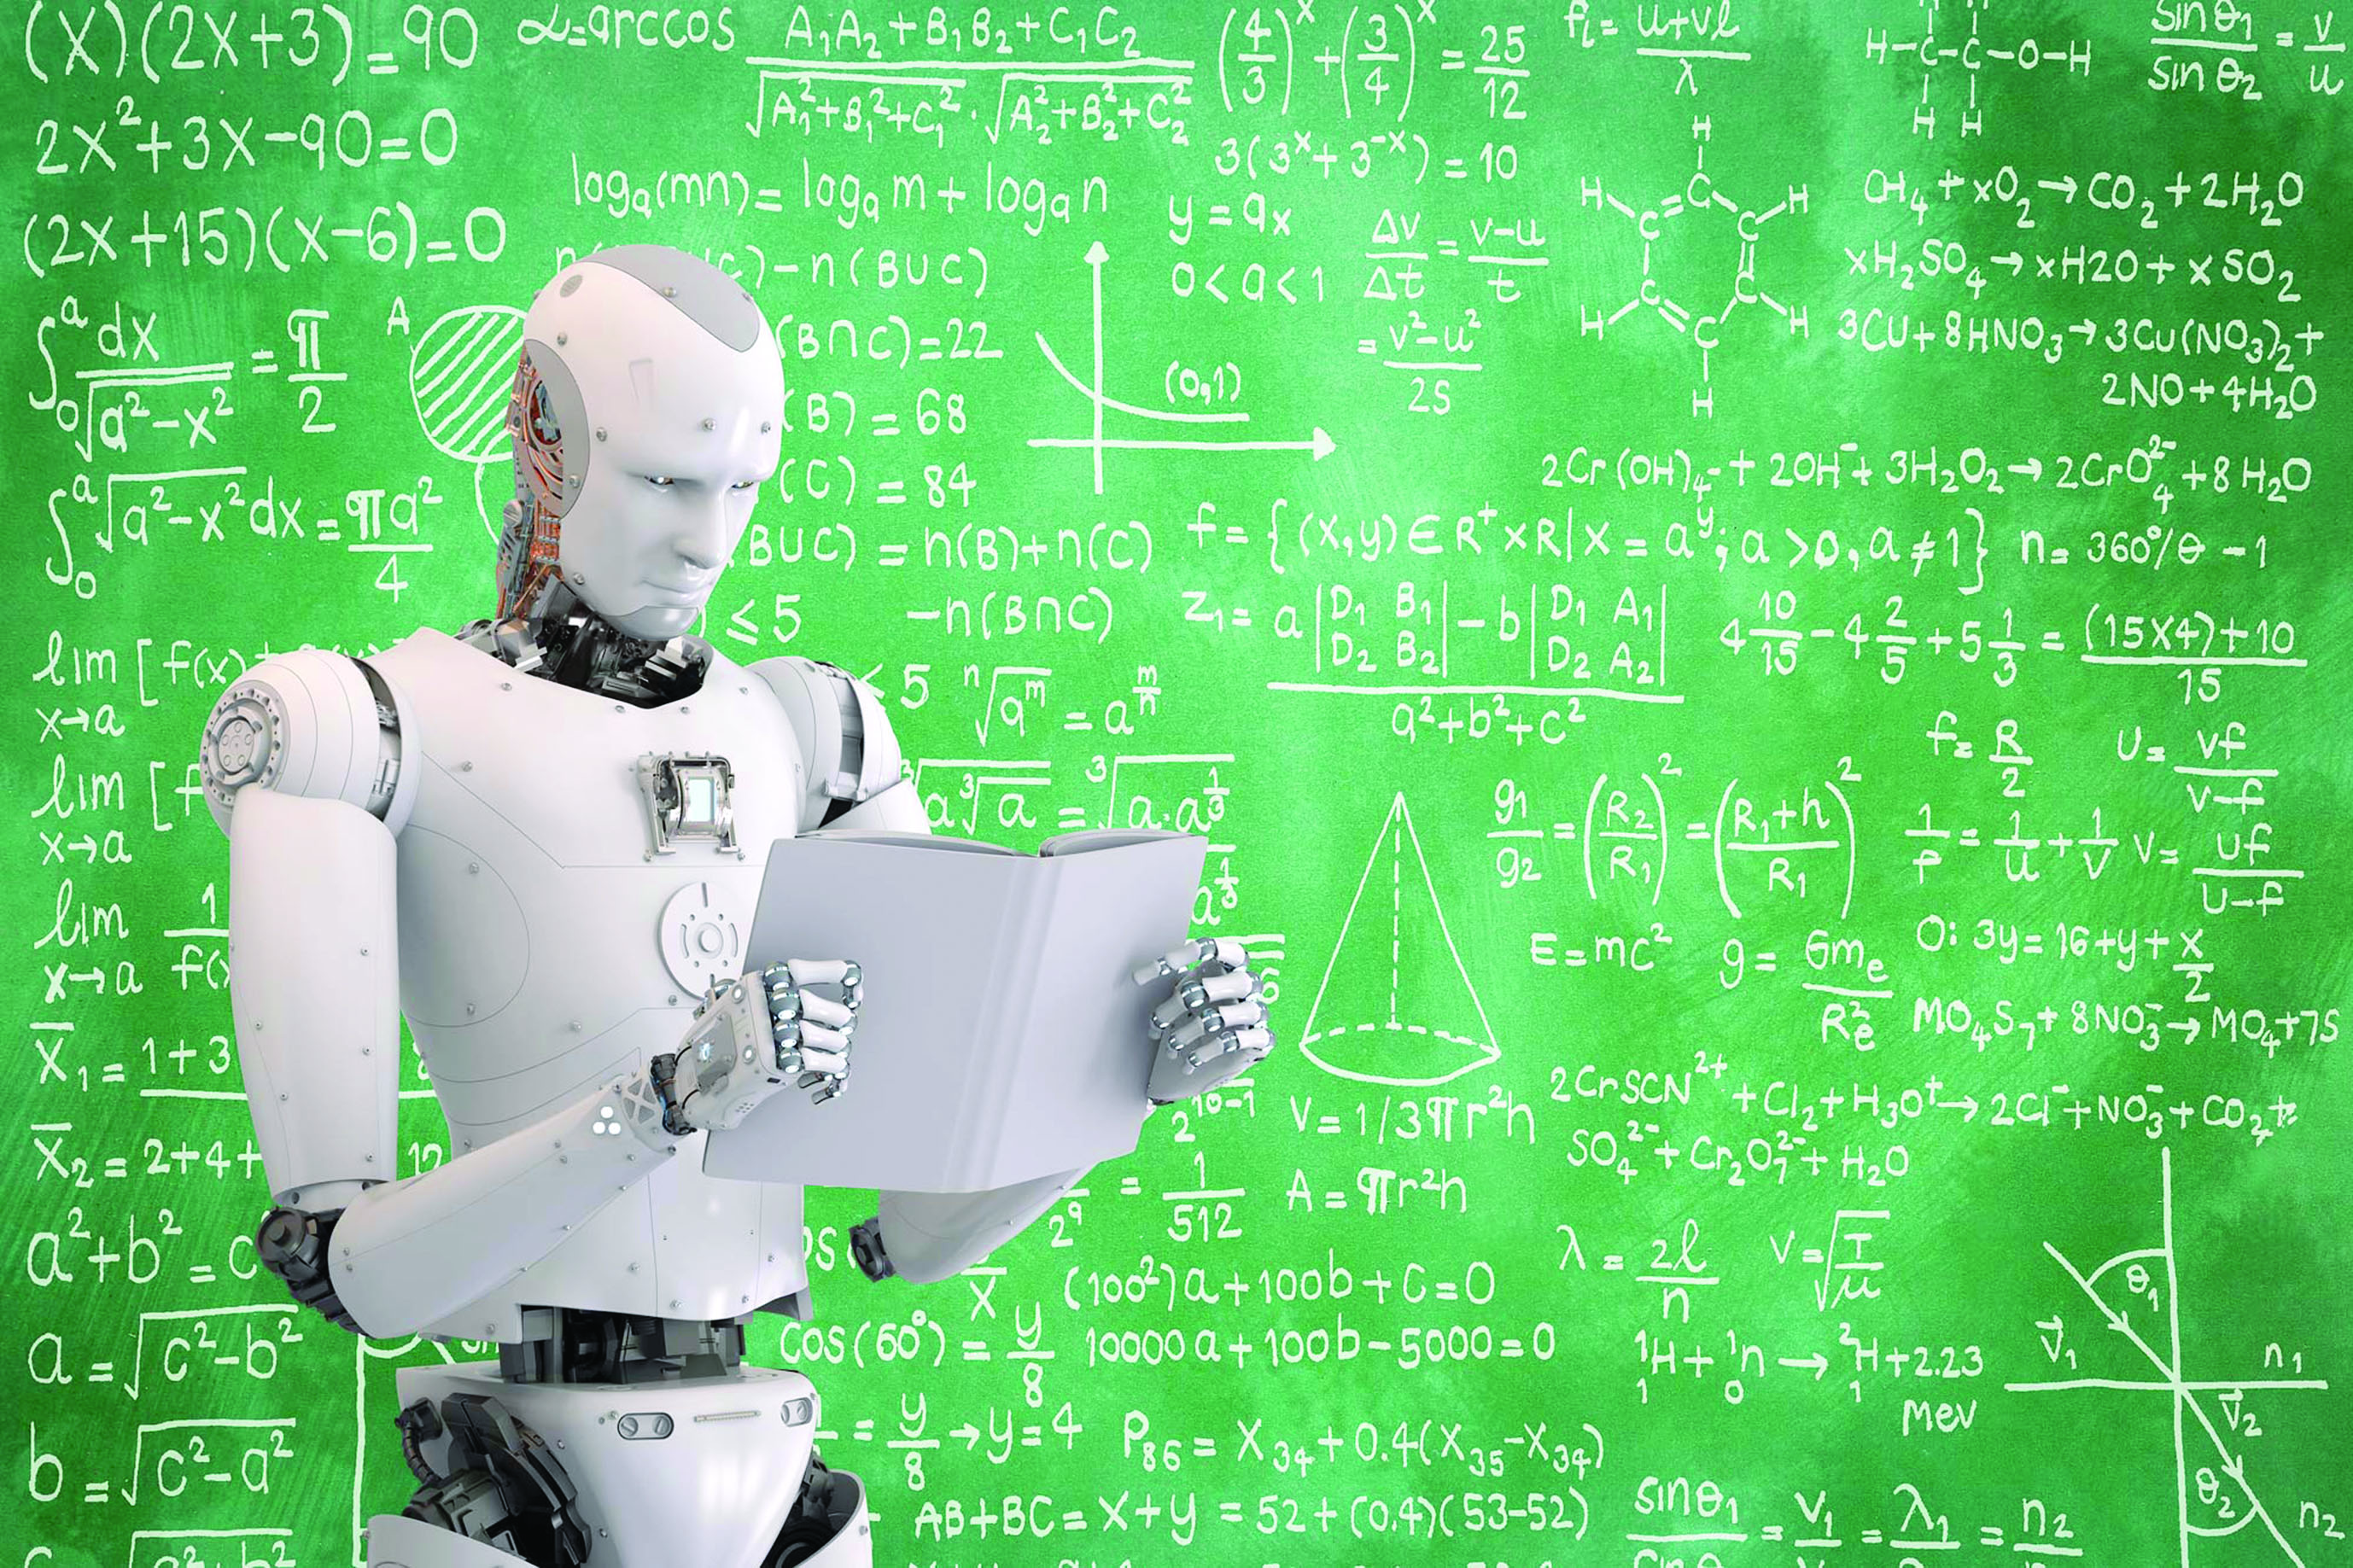 الروبوتات تتجاوز البشر في أماكن العمل بحلول العام 2025